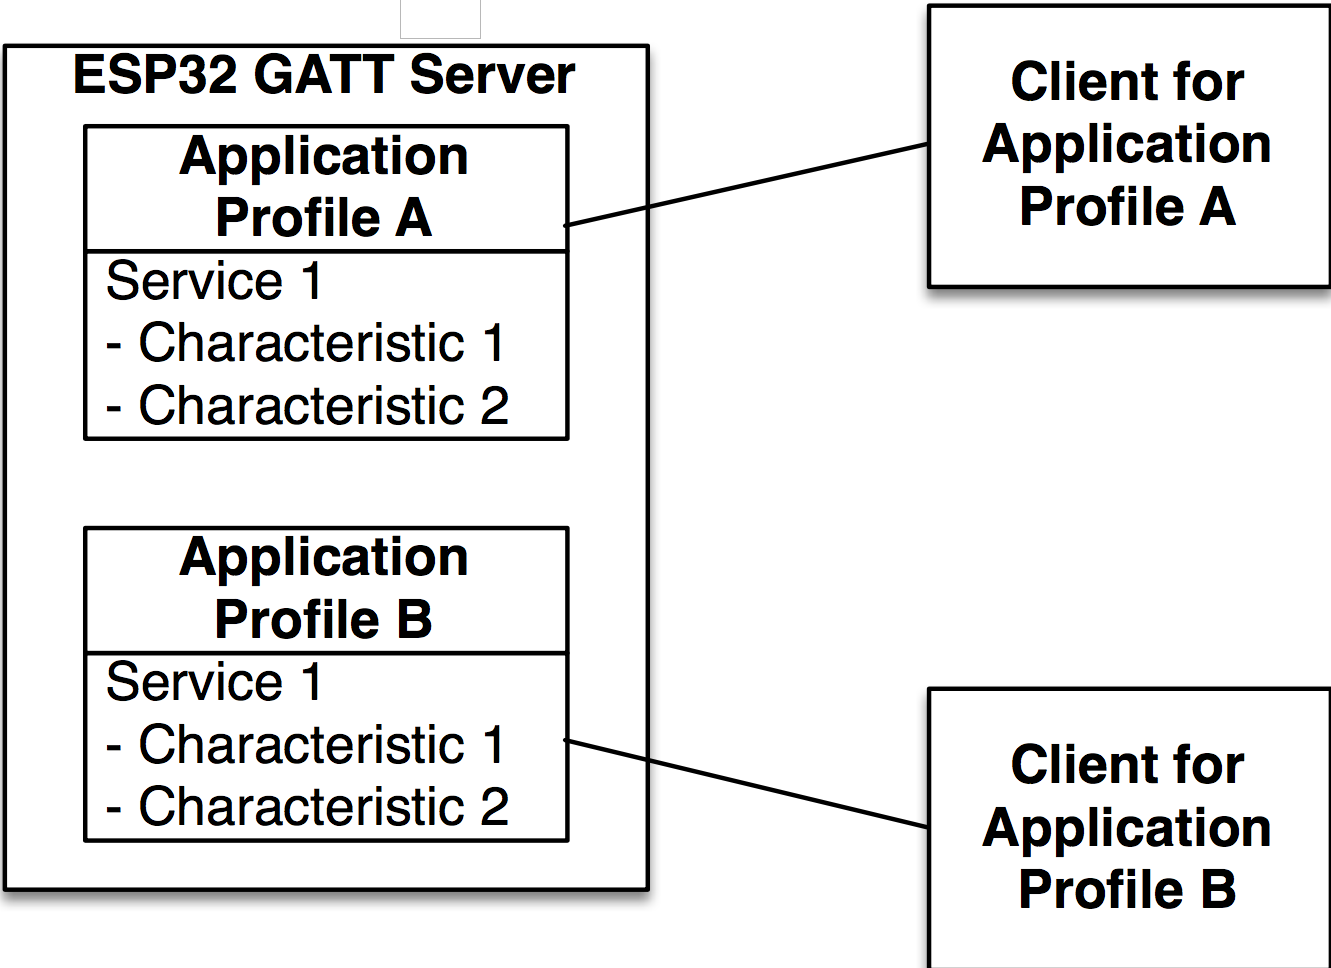 GATT_Server_Figure_1.png